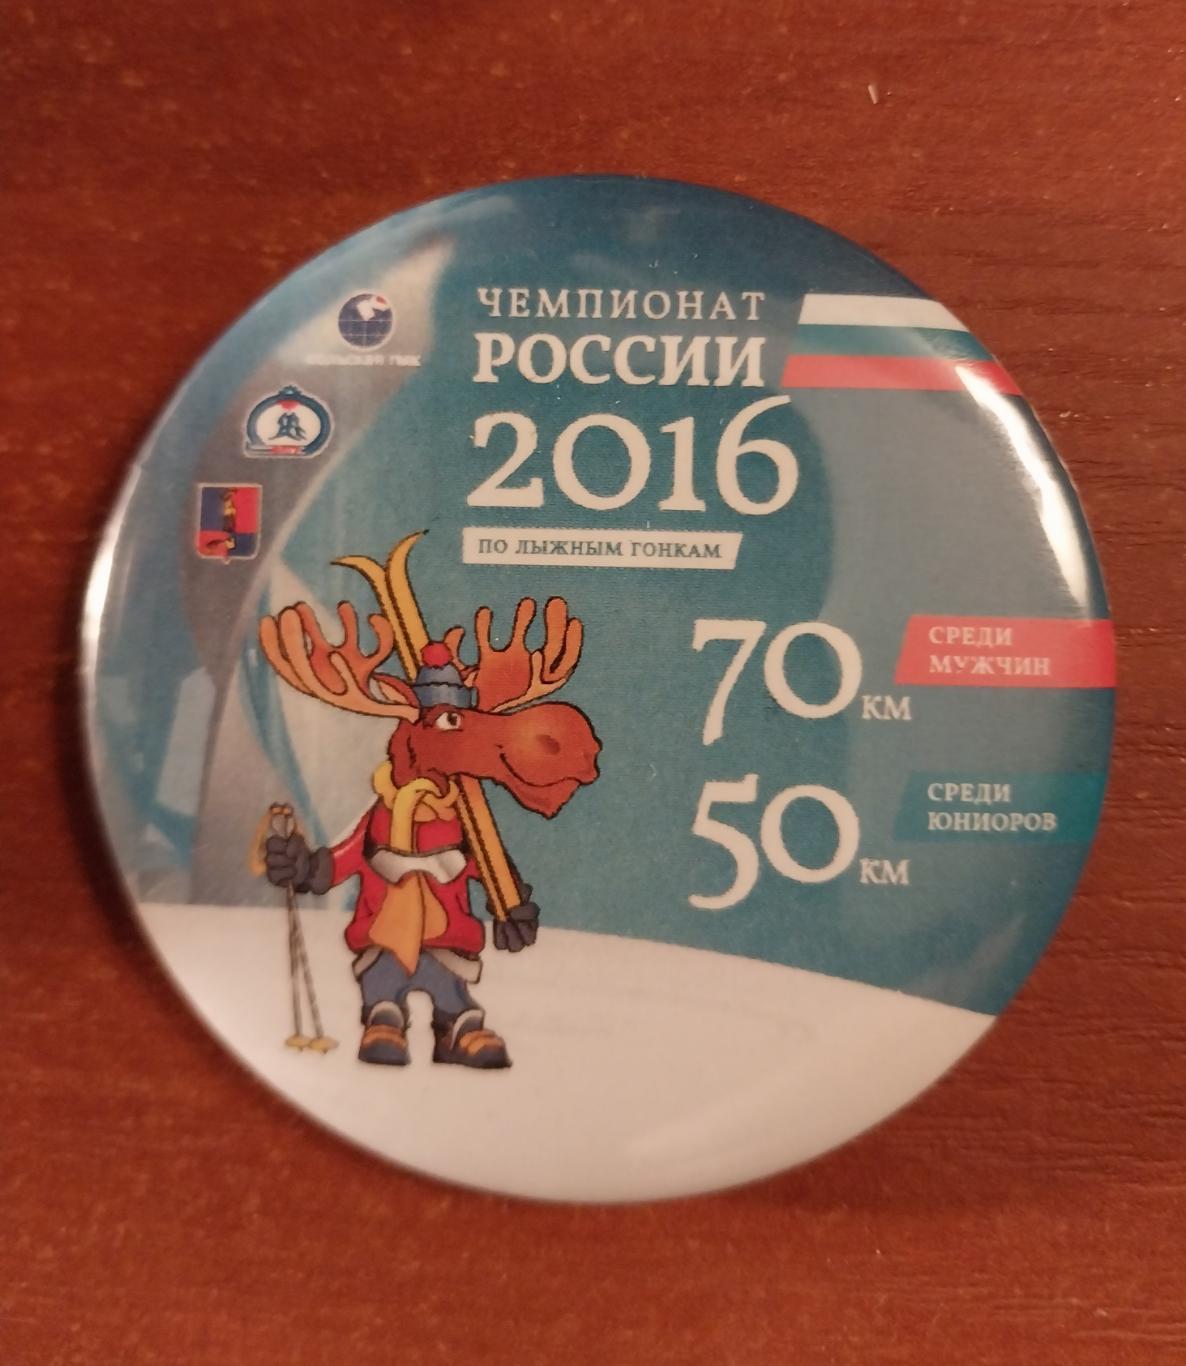 Лыжные гонки. Чемпионат России 2016. Мончегорск. 70 км